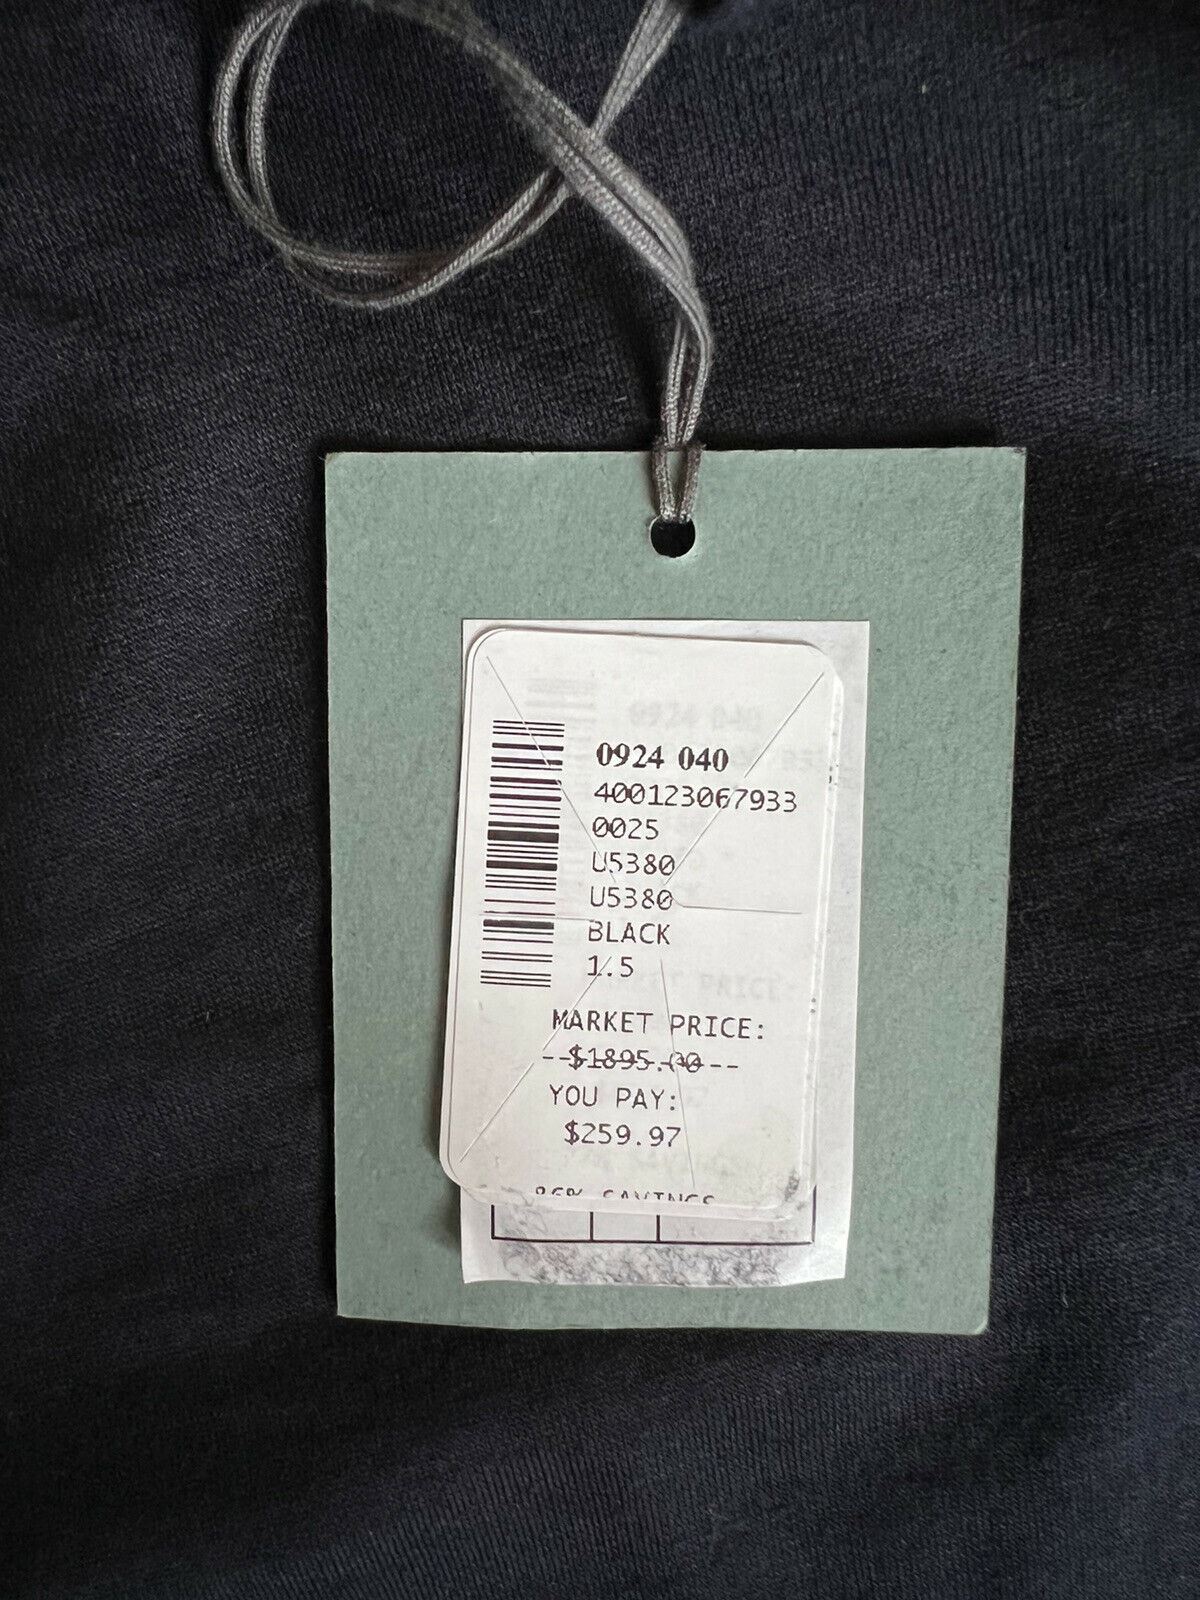 NWT $1895 Ermenegildo Zegna Men's Crewneck Cashmere/Cotton Sweater 48 US (64 Eu)